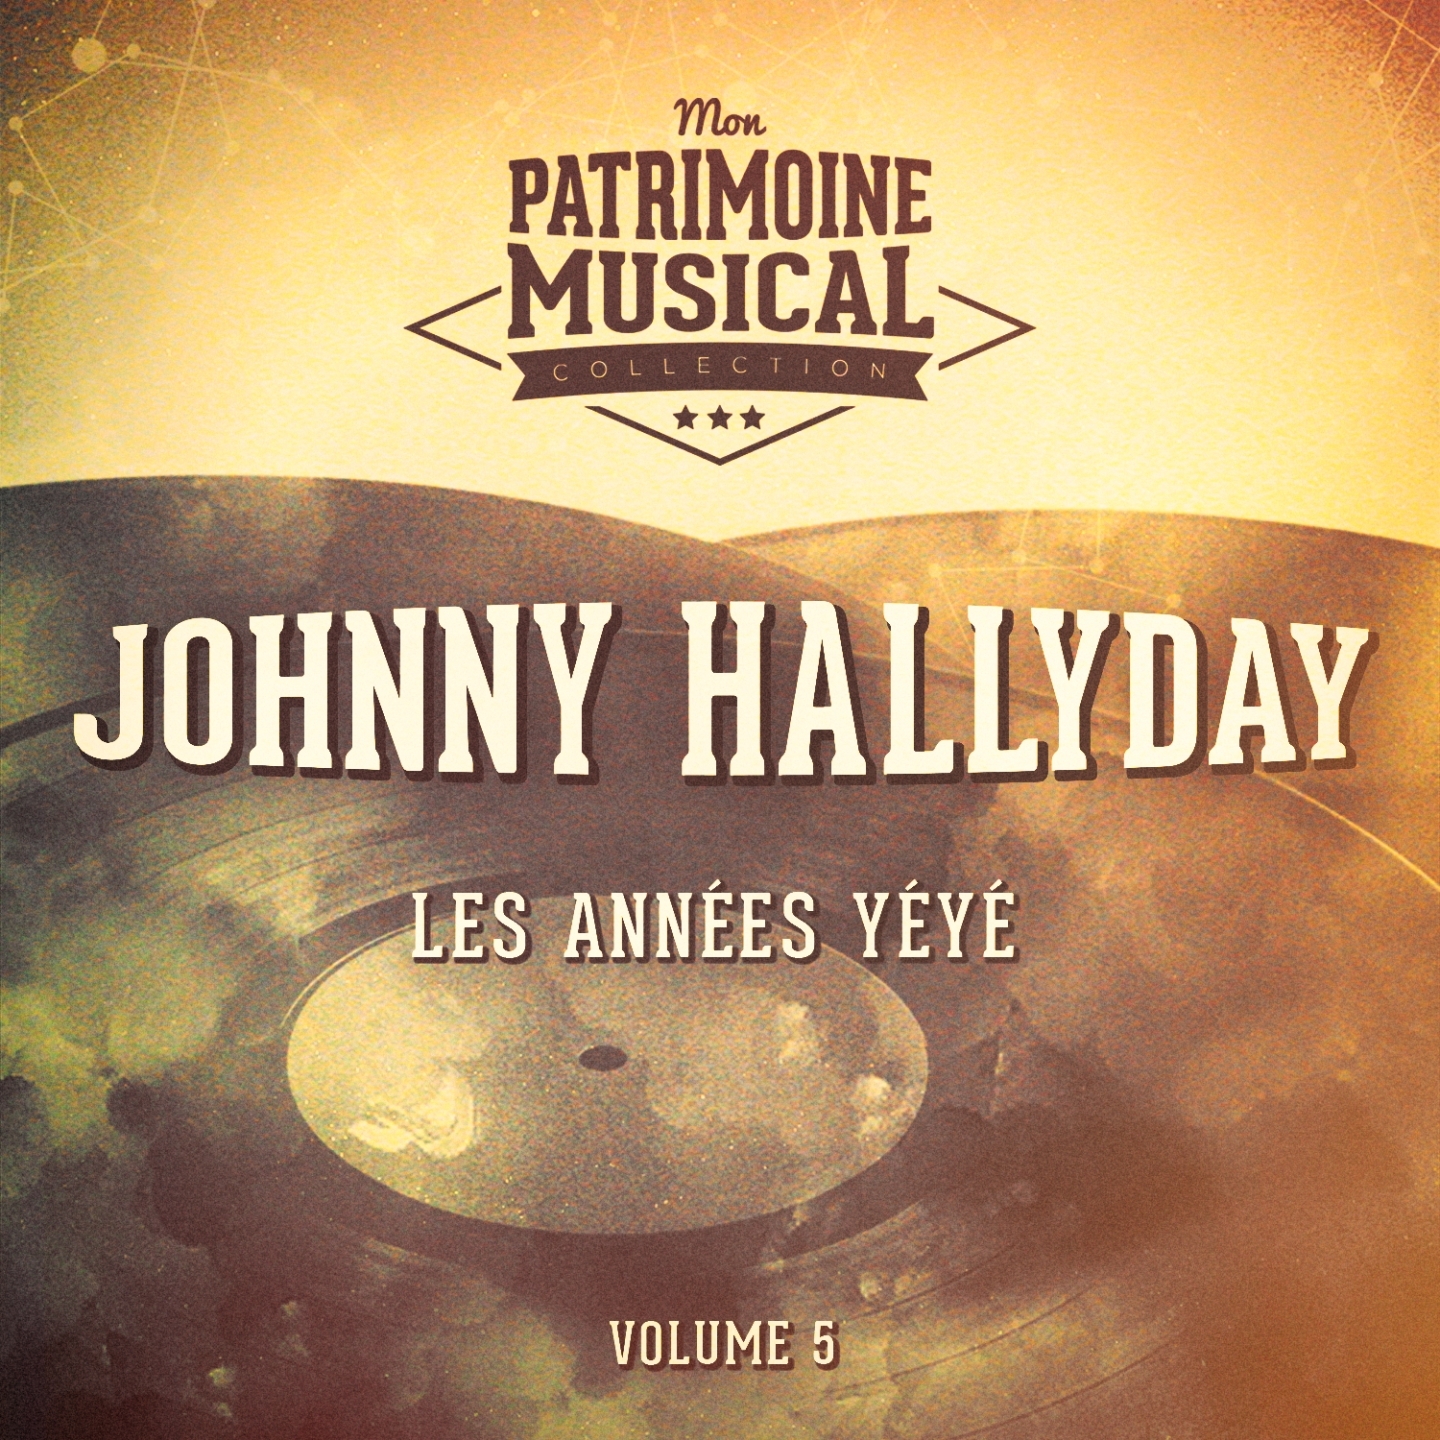 Les anne es Rock' n' Roll : Johnny Hallyday, Vol. 5 America' s Rockin' Hits